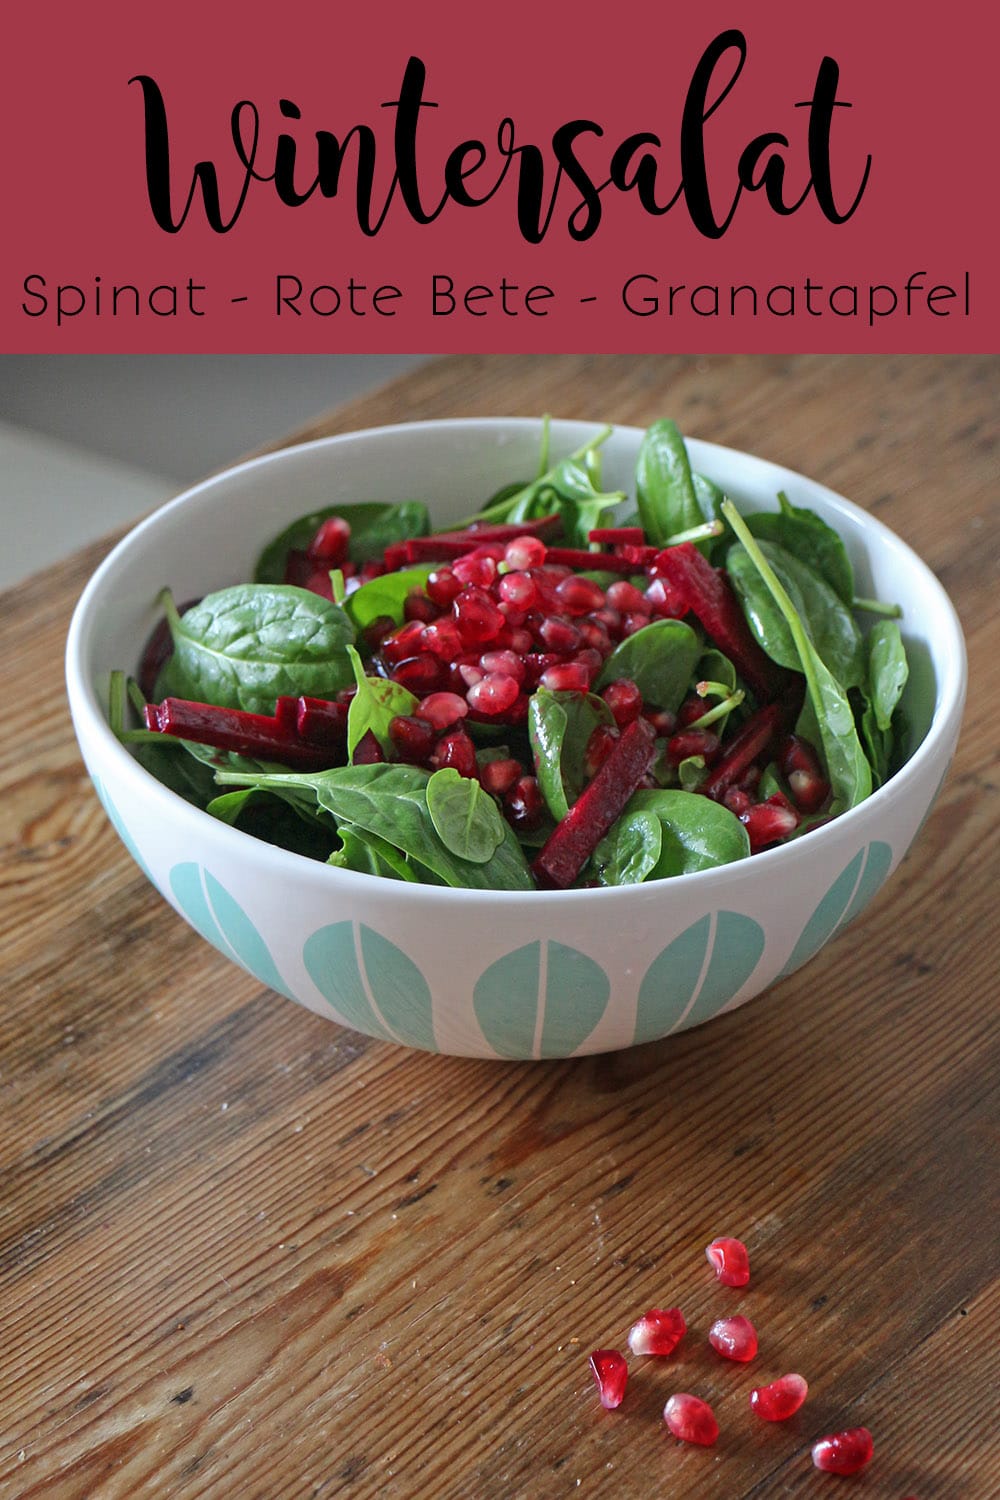 Wintersalat mit Spinat, Rote Bete und Granatapfel